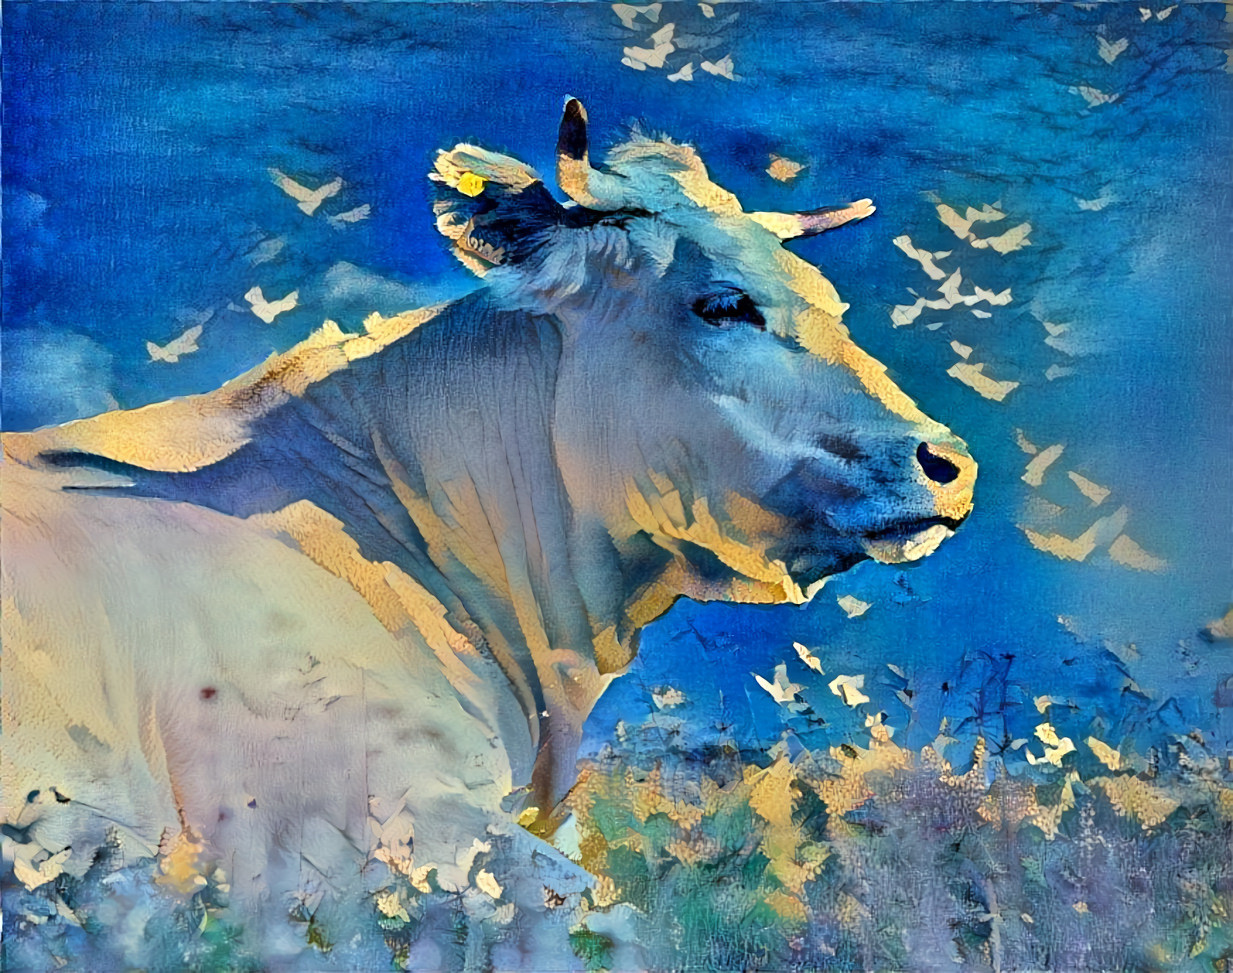 White cow, blue shadows, sky